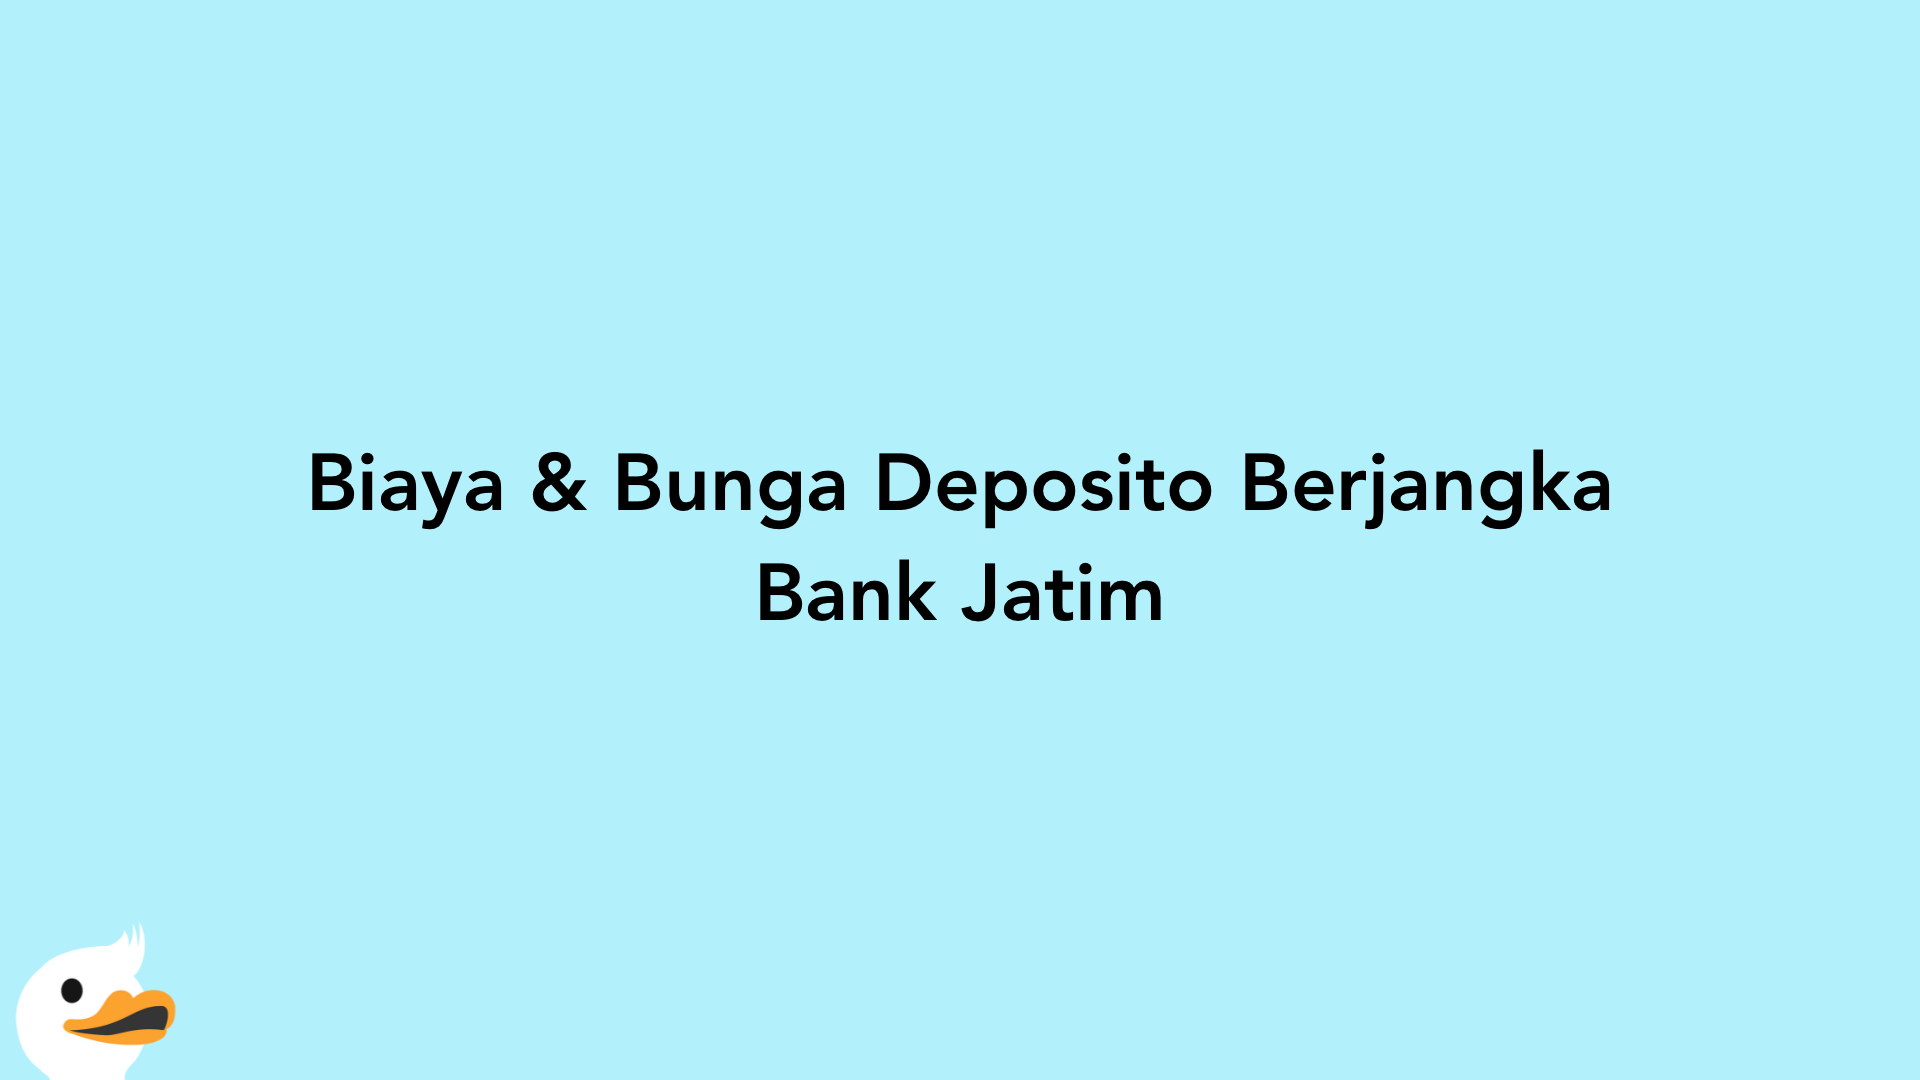 Biaya & Bunga Deposito Berjangka Bank Jatim